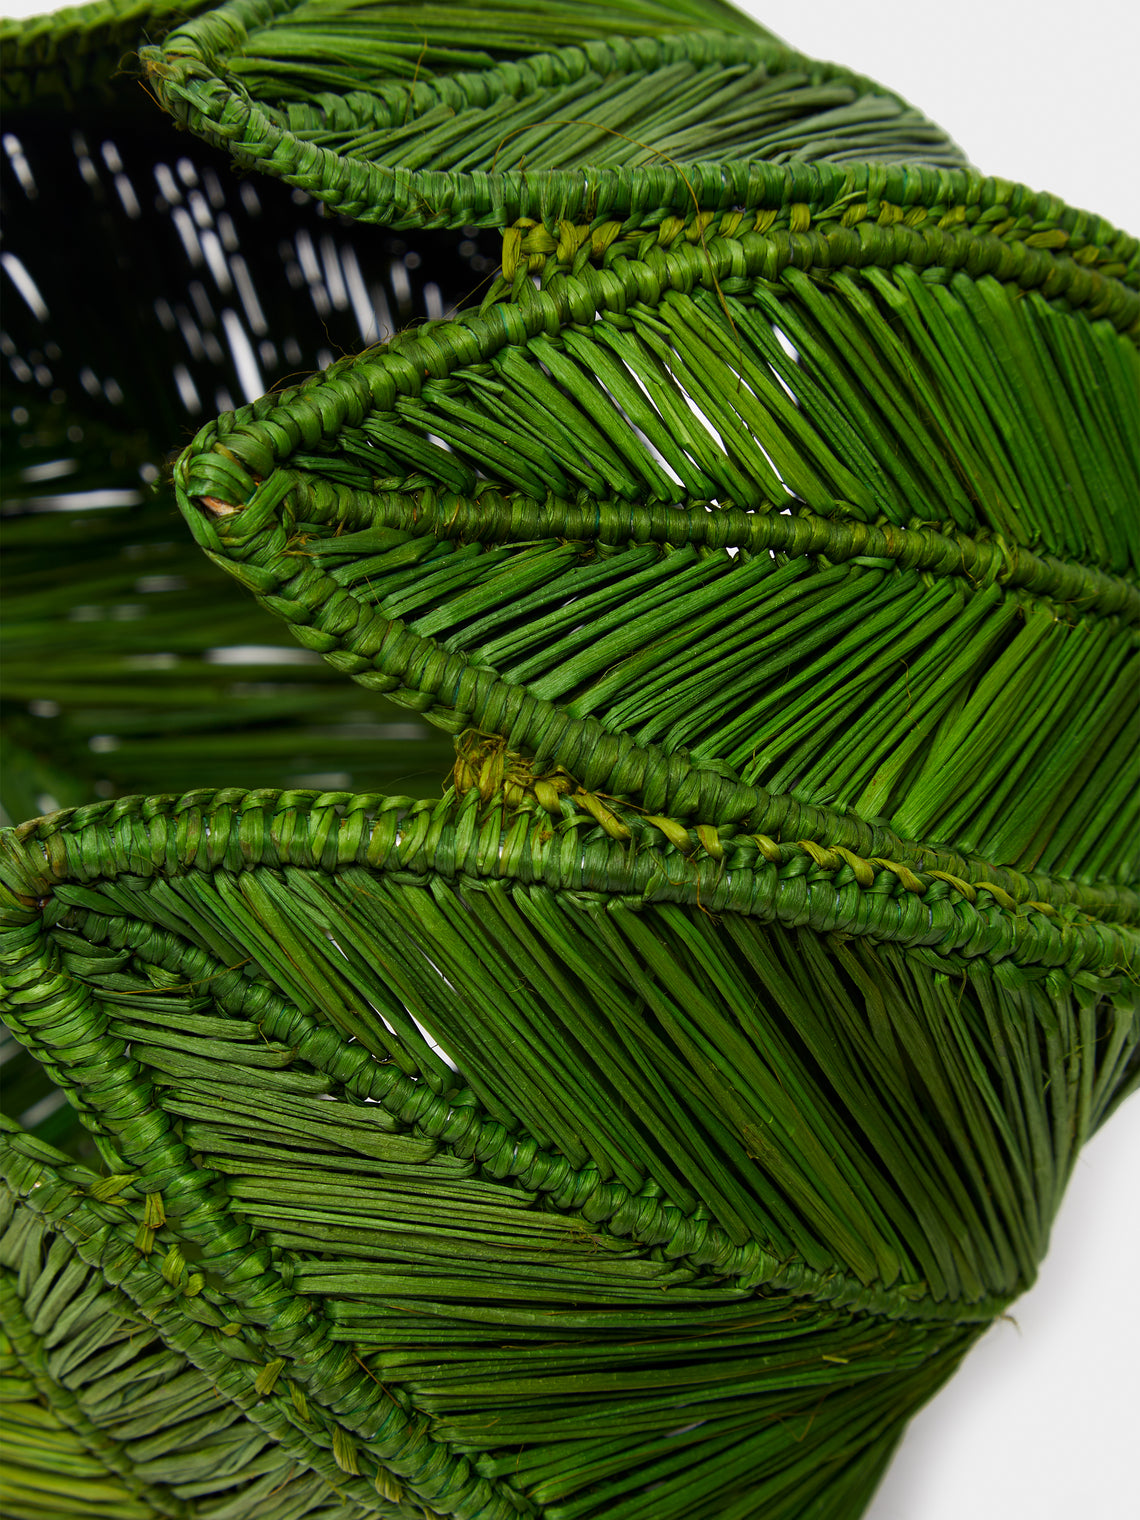 Artesanías del Atlántico - Handwoven Stromanthe Palm Vase - Green - ABASK